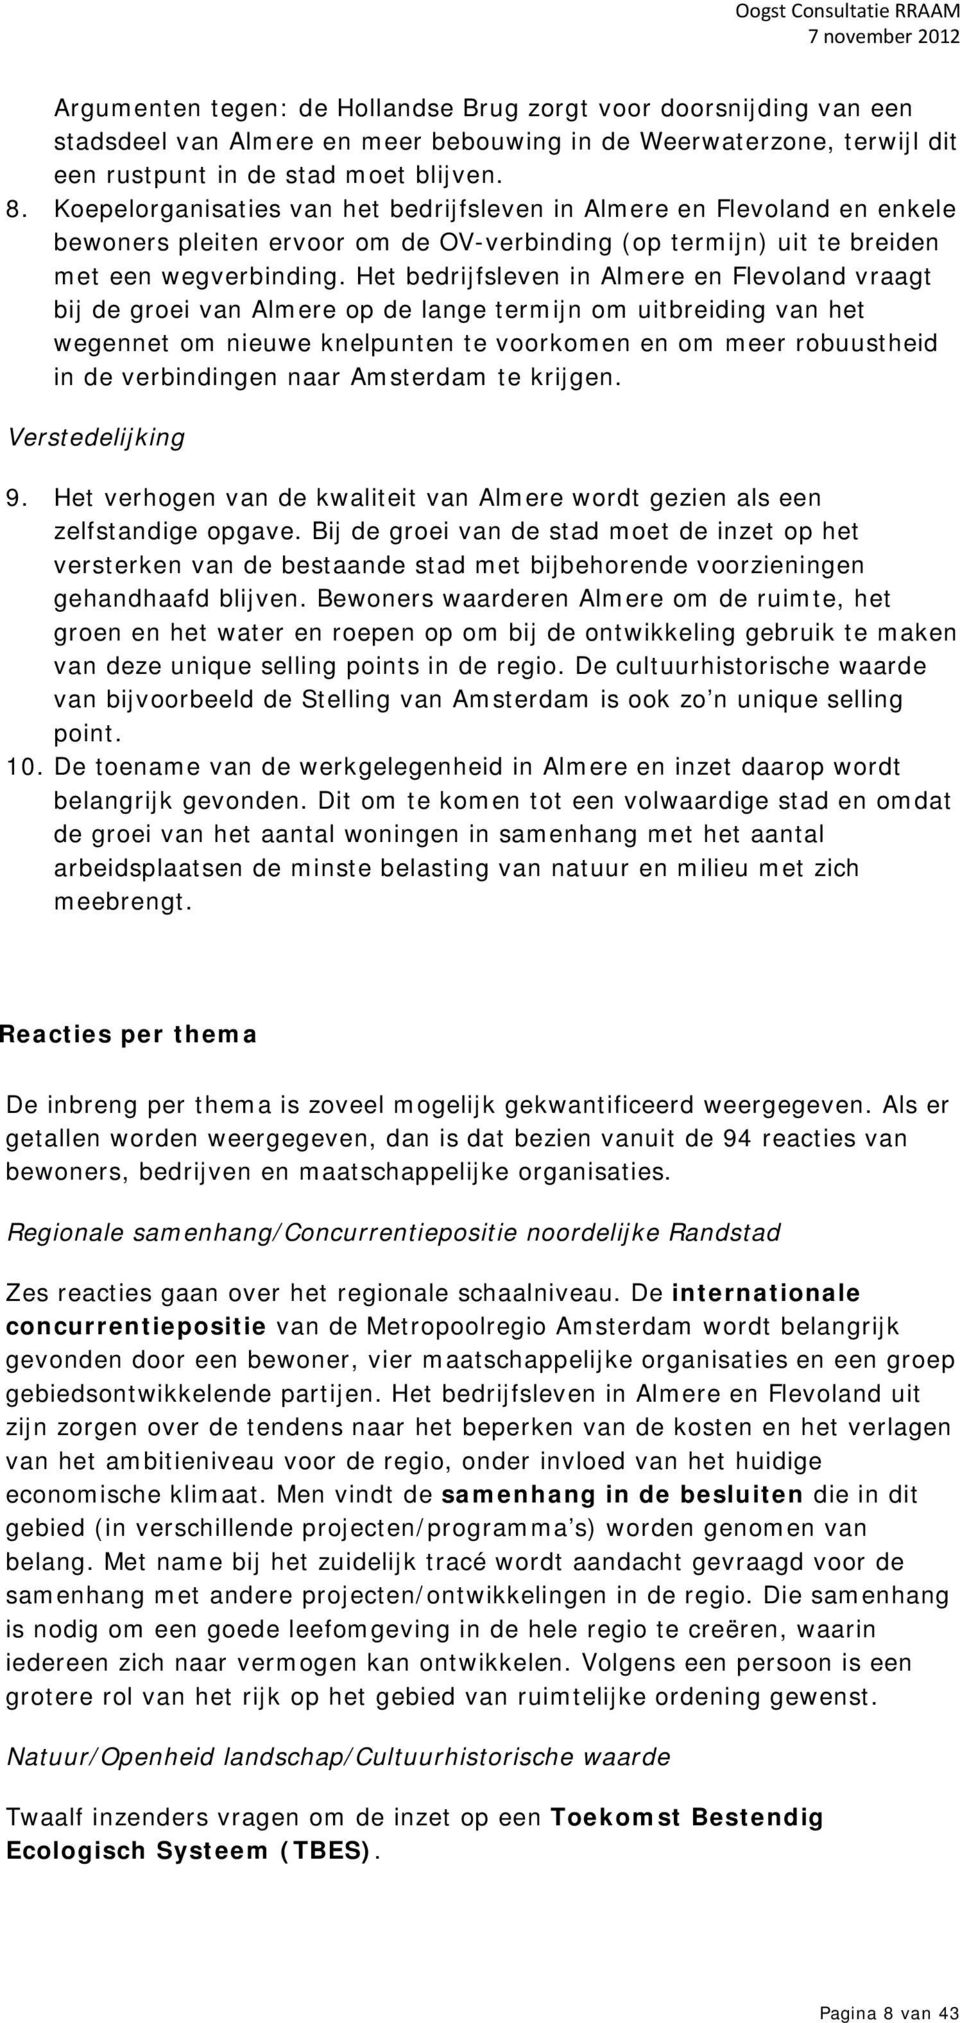 Het bedrijfsleven in Almere en Flevoland vraagt bij de groei van Almere op de lange termijn om uitbreiding van het wegennet om nieuwe knelpunten te voorkomen en om meer robuustheid in de verbindingen